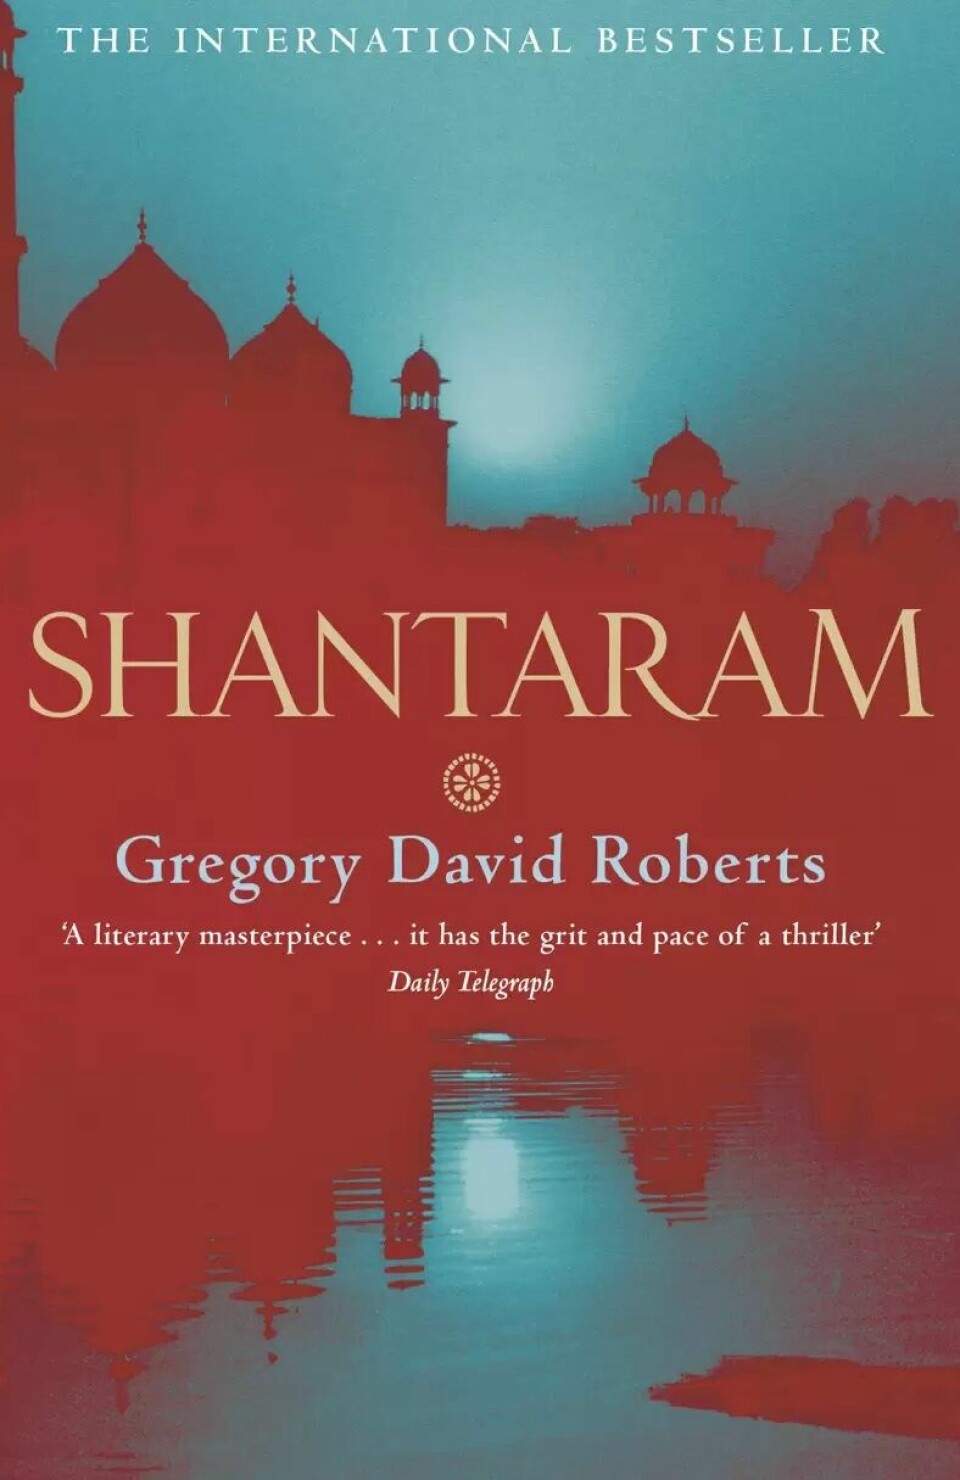 FULL PAKKE: Shantaram av Gregory David Roberts, kr 199 (annonse).